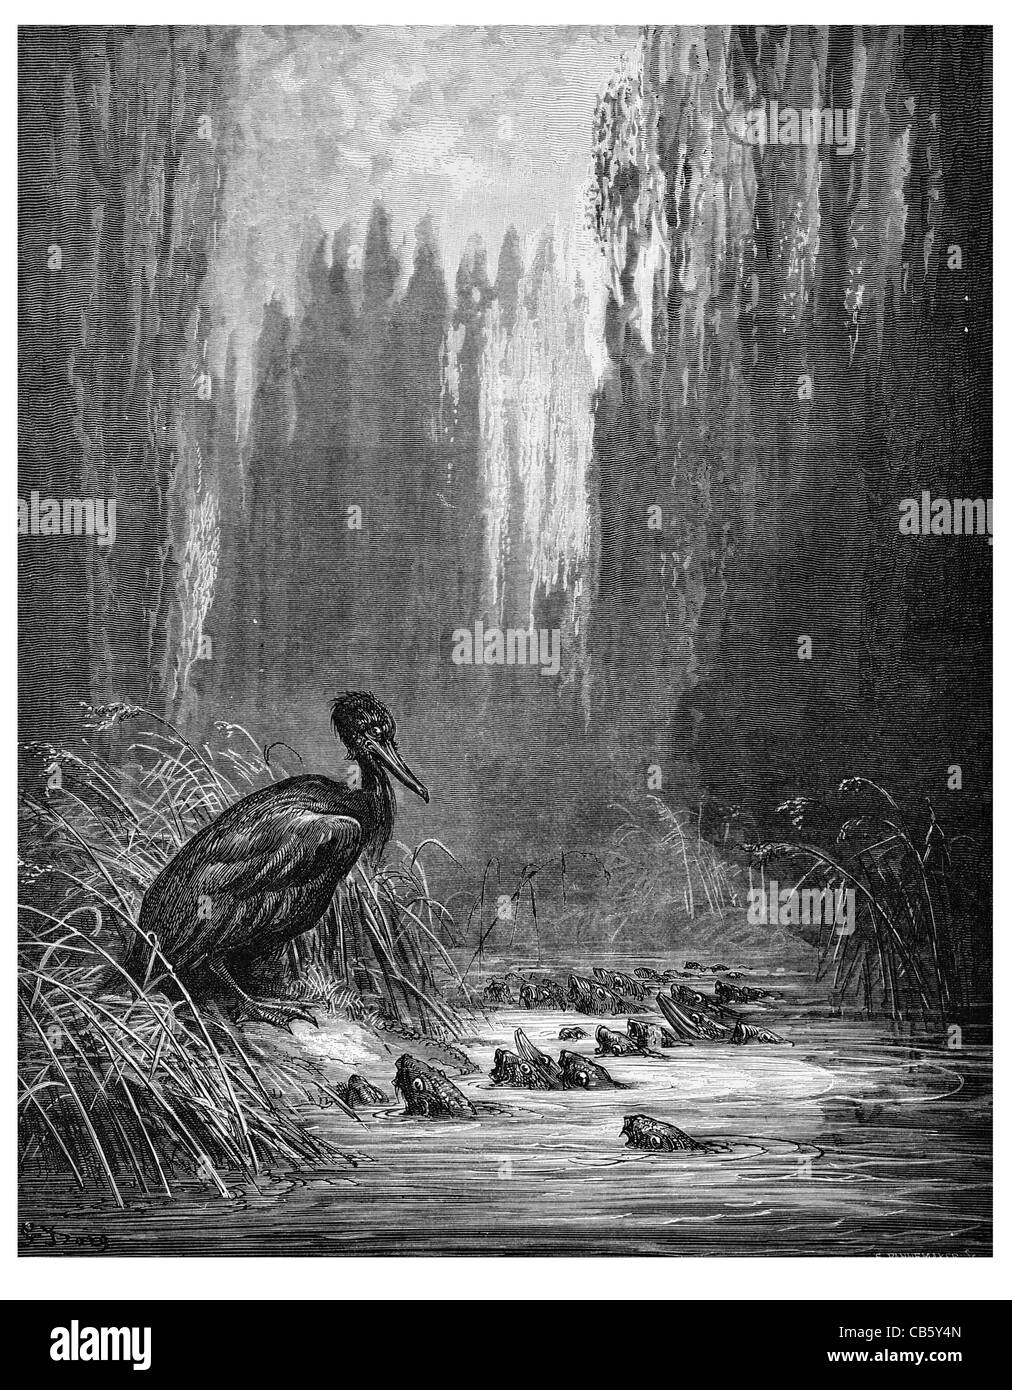 Les poissons et le cormoran Poisson Cormaran relation prédateur-proie pêche étang ruisseau forestier forestiers bois dîner Banque D'Images